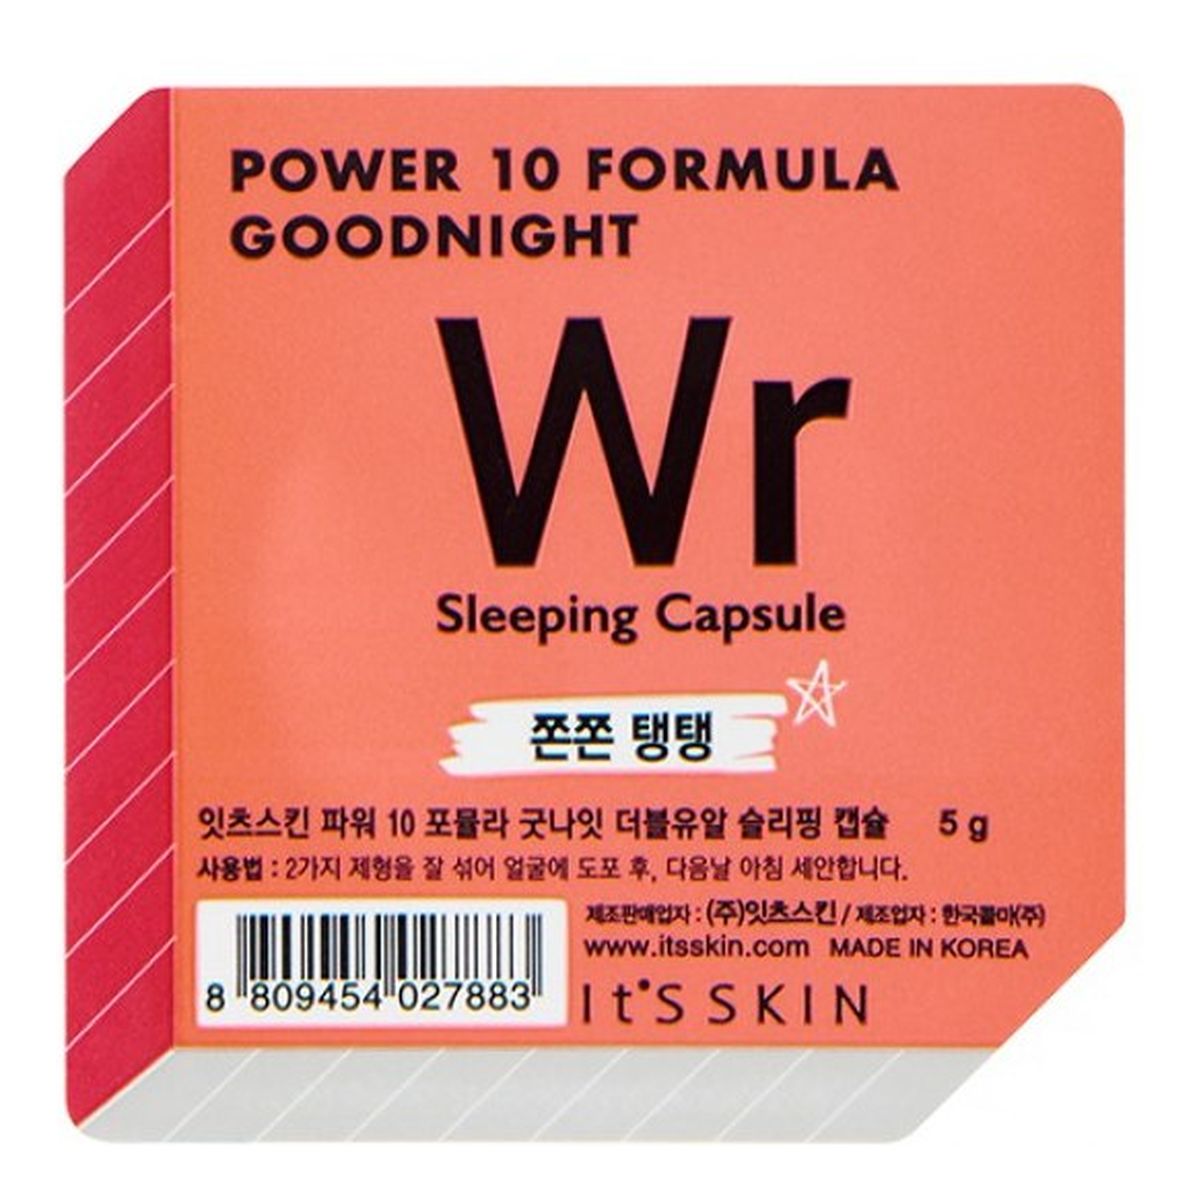 It's Skin Power 10 Formula Wr Good Night Sleeping Przeciwzmarszczkowa dwufazowa maseczka całonocna w kapsułce 5g